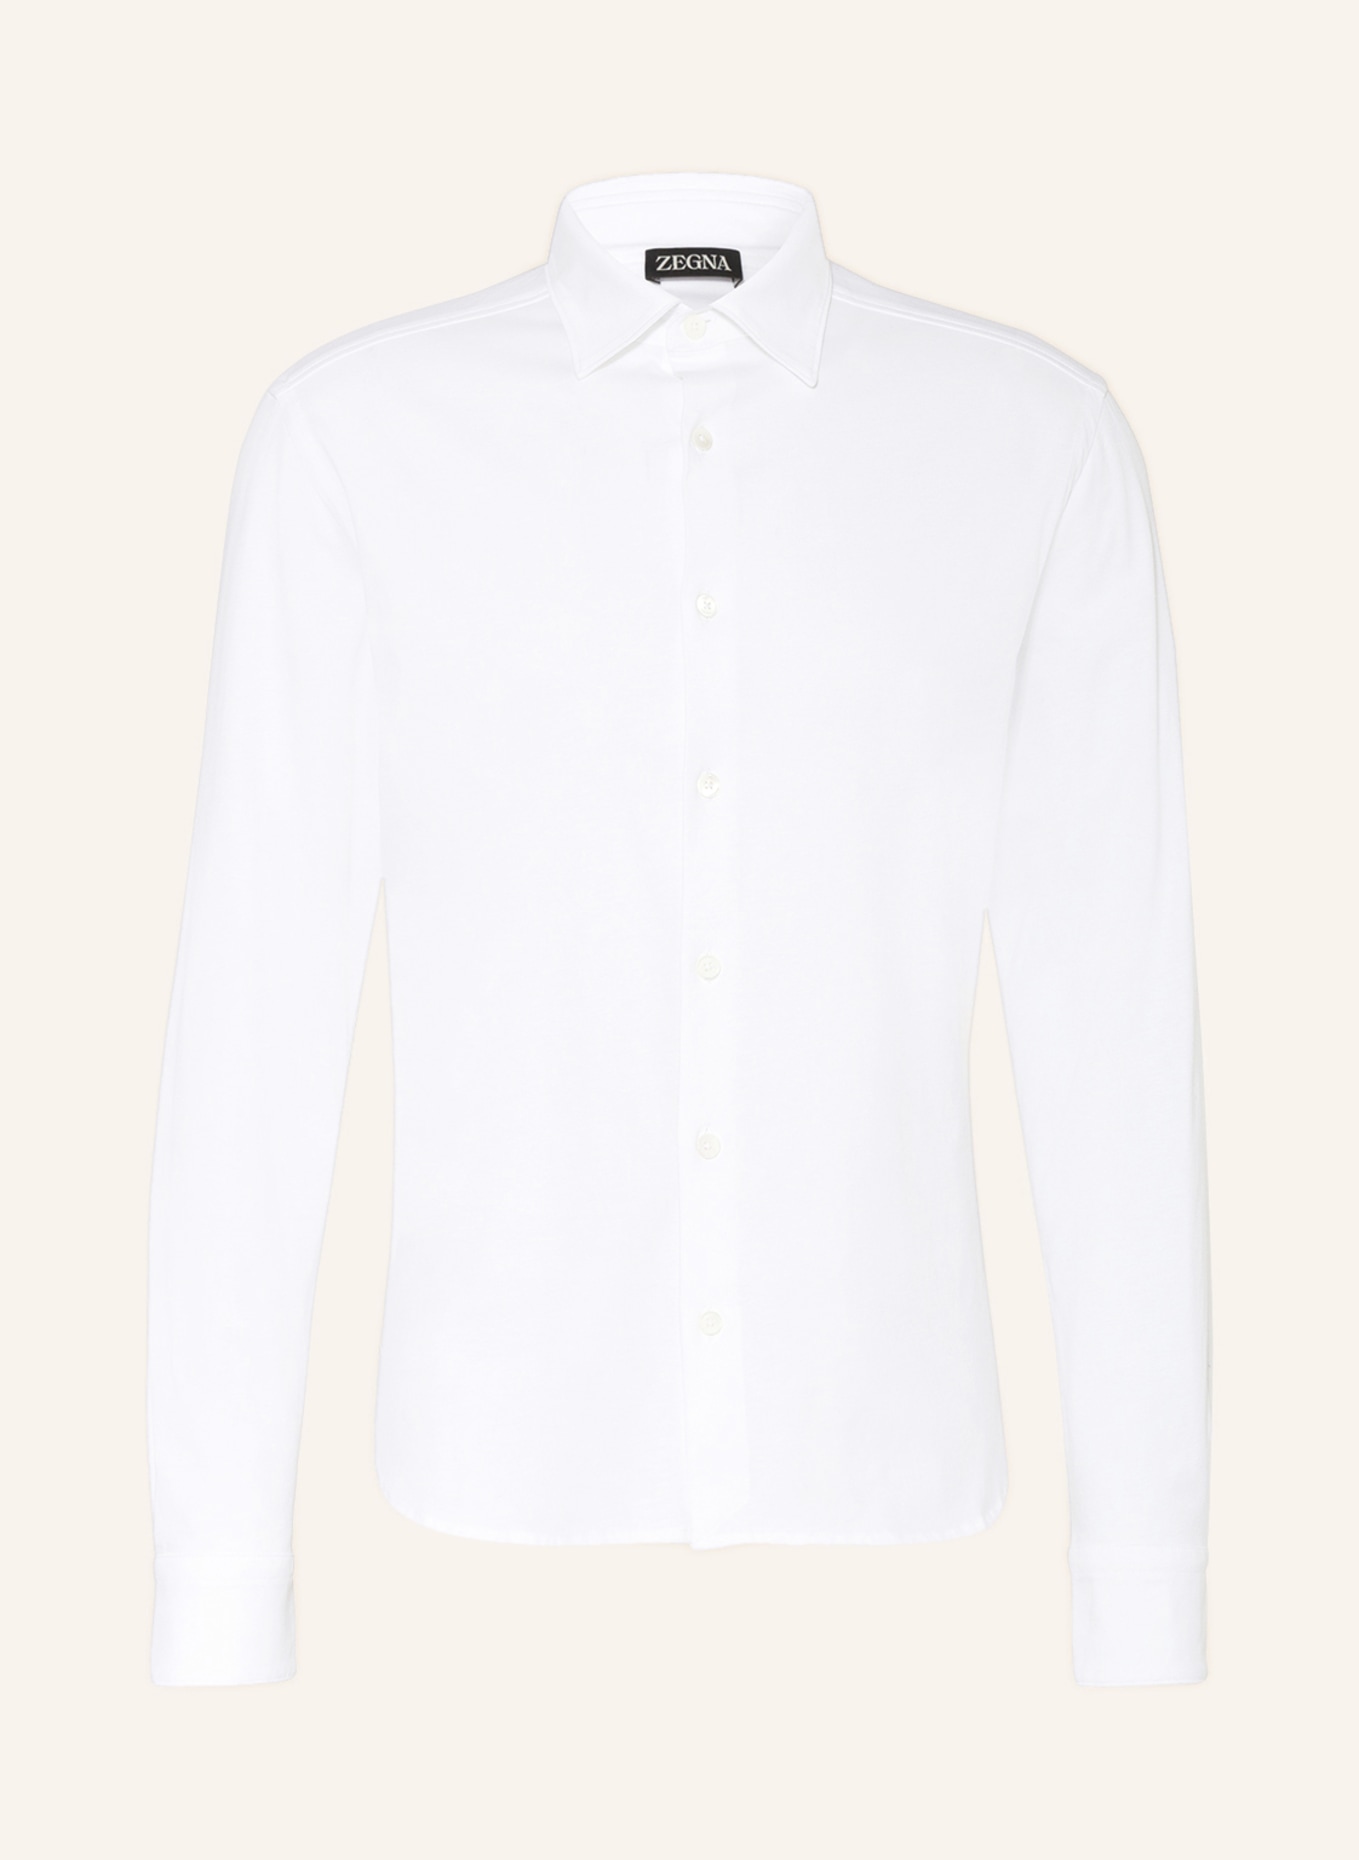 ZEGNA Jerseyhemd Slim Fit, Farbe: WEISS (Bild 1)